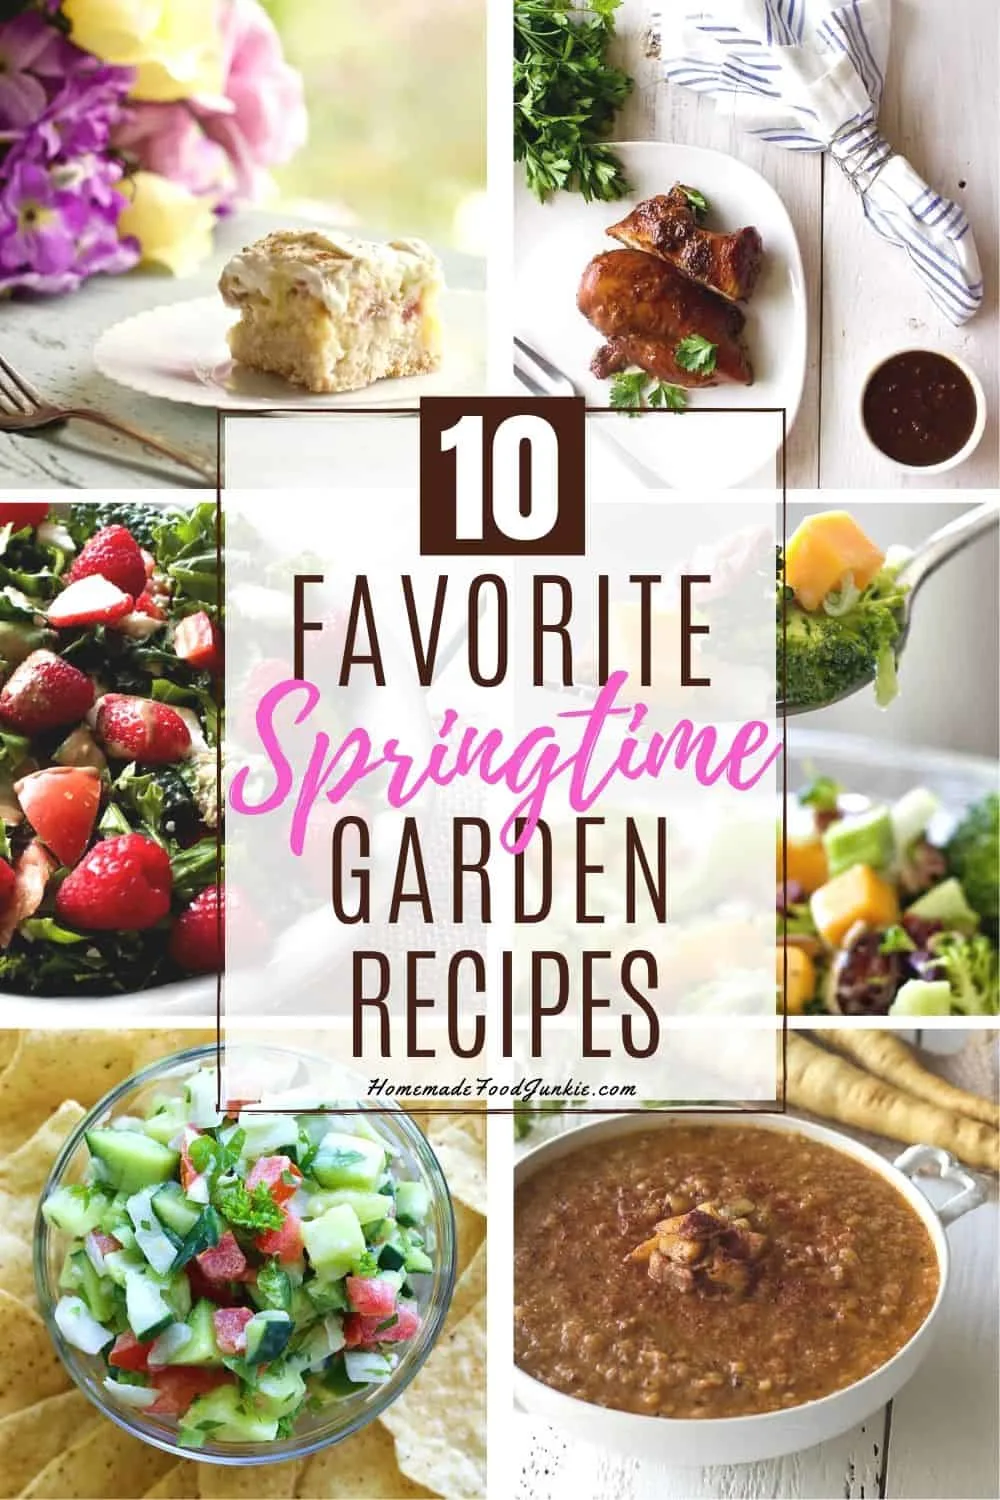 Ten Favorite Springtime Garden Recipes-Pin Image